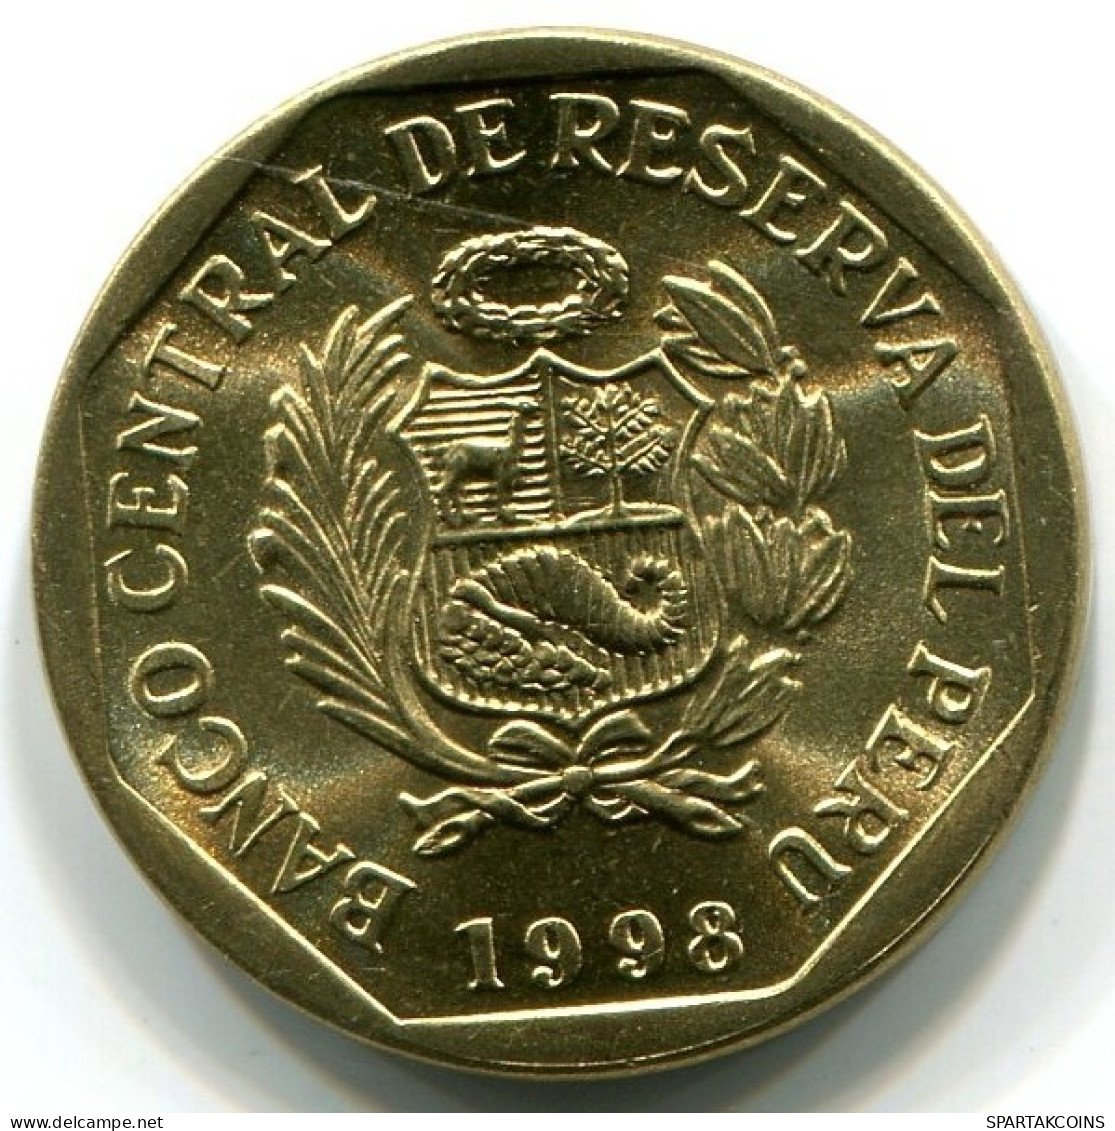 5 CENTIMOS 1998 PERU UNC Coin #W10932.U.A - Peru